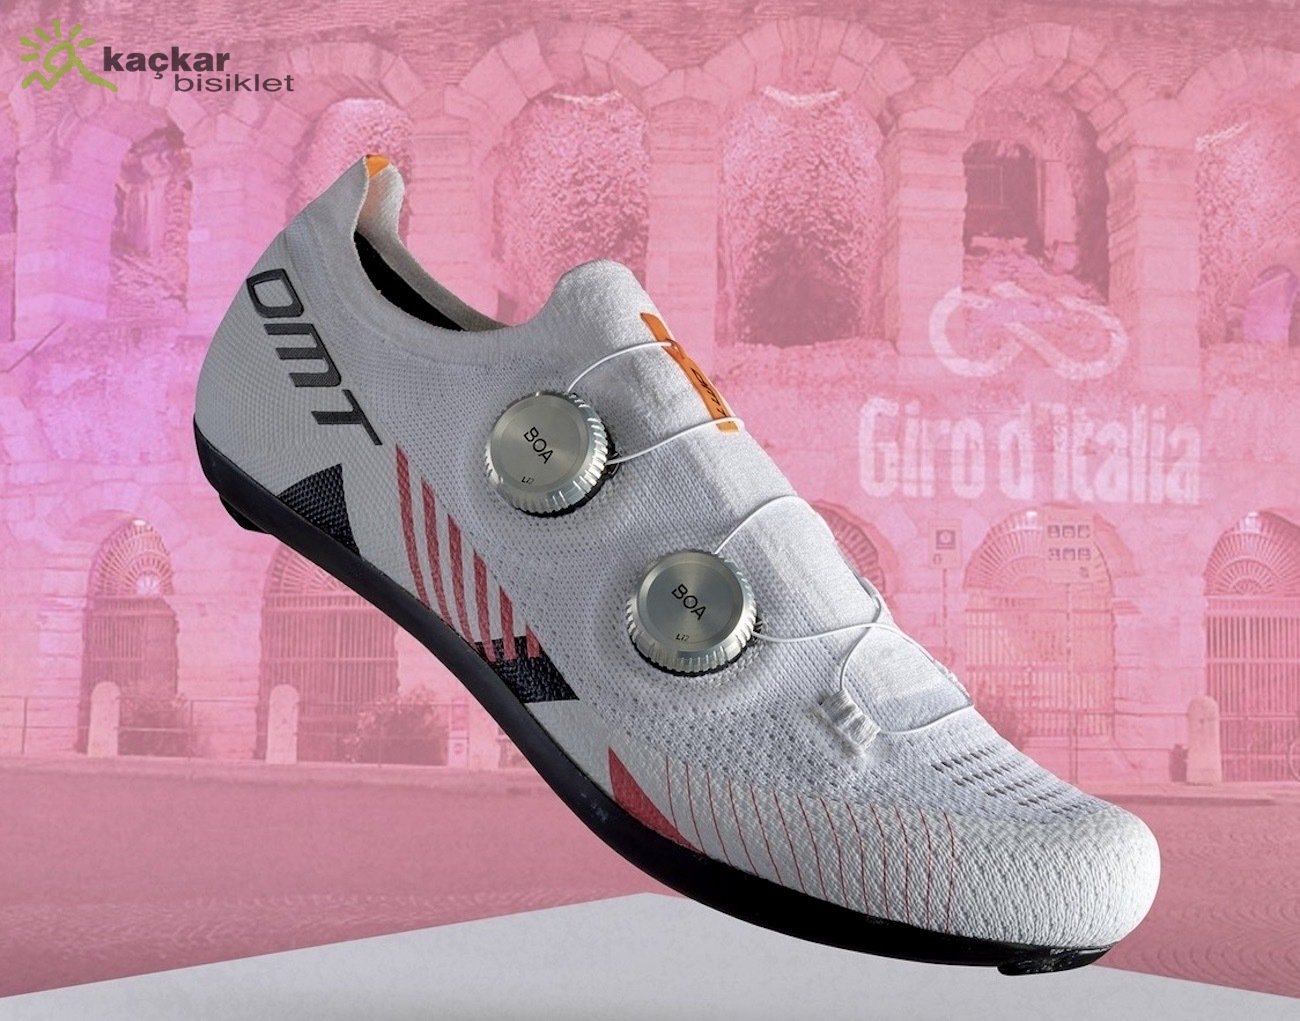 DMT KR0 Giro D'Italia Collection Ayakkabı Beyaz / Pembe